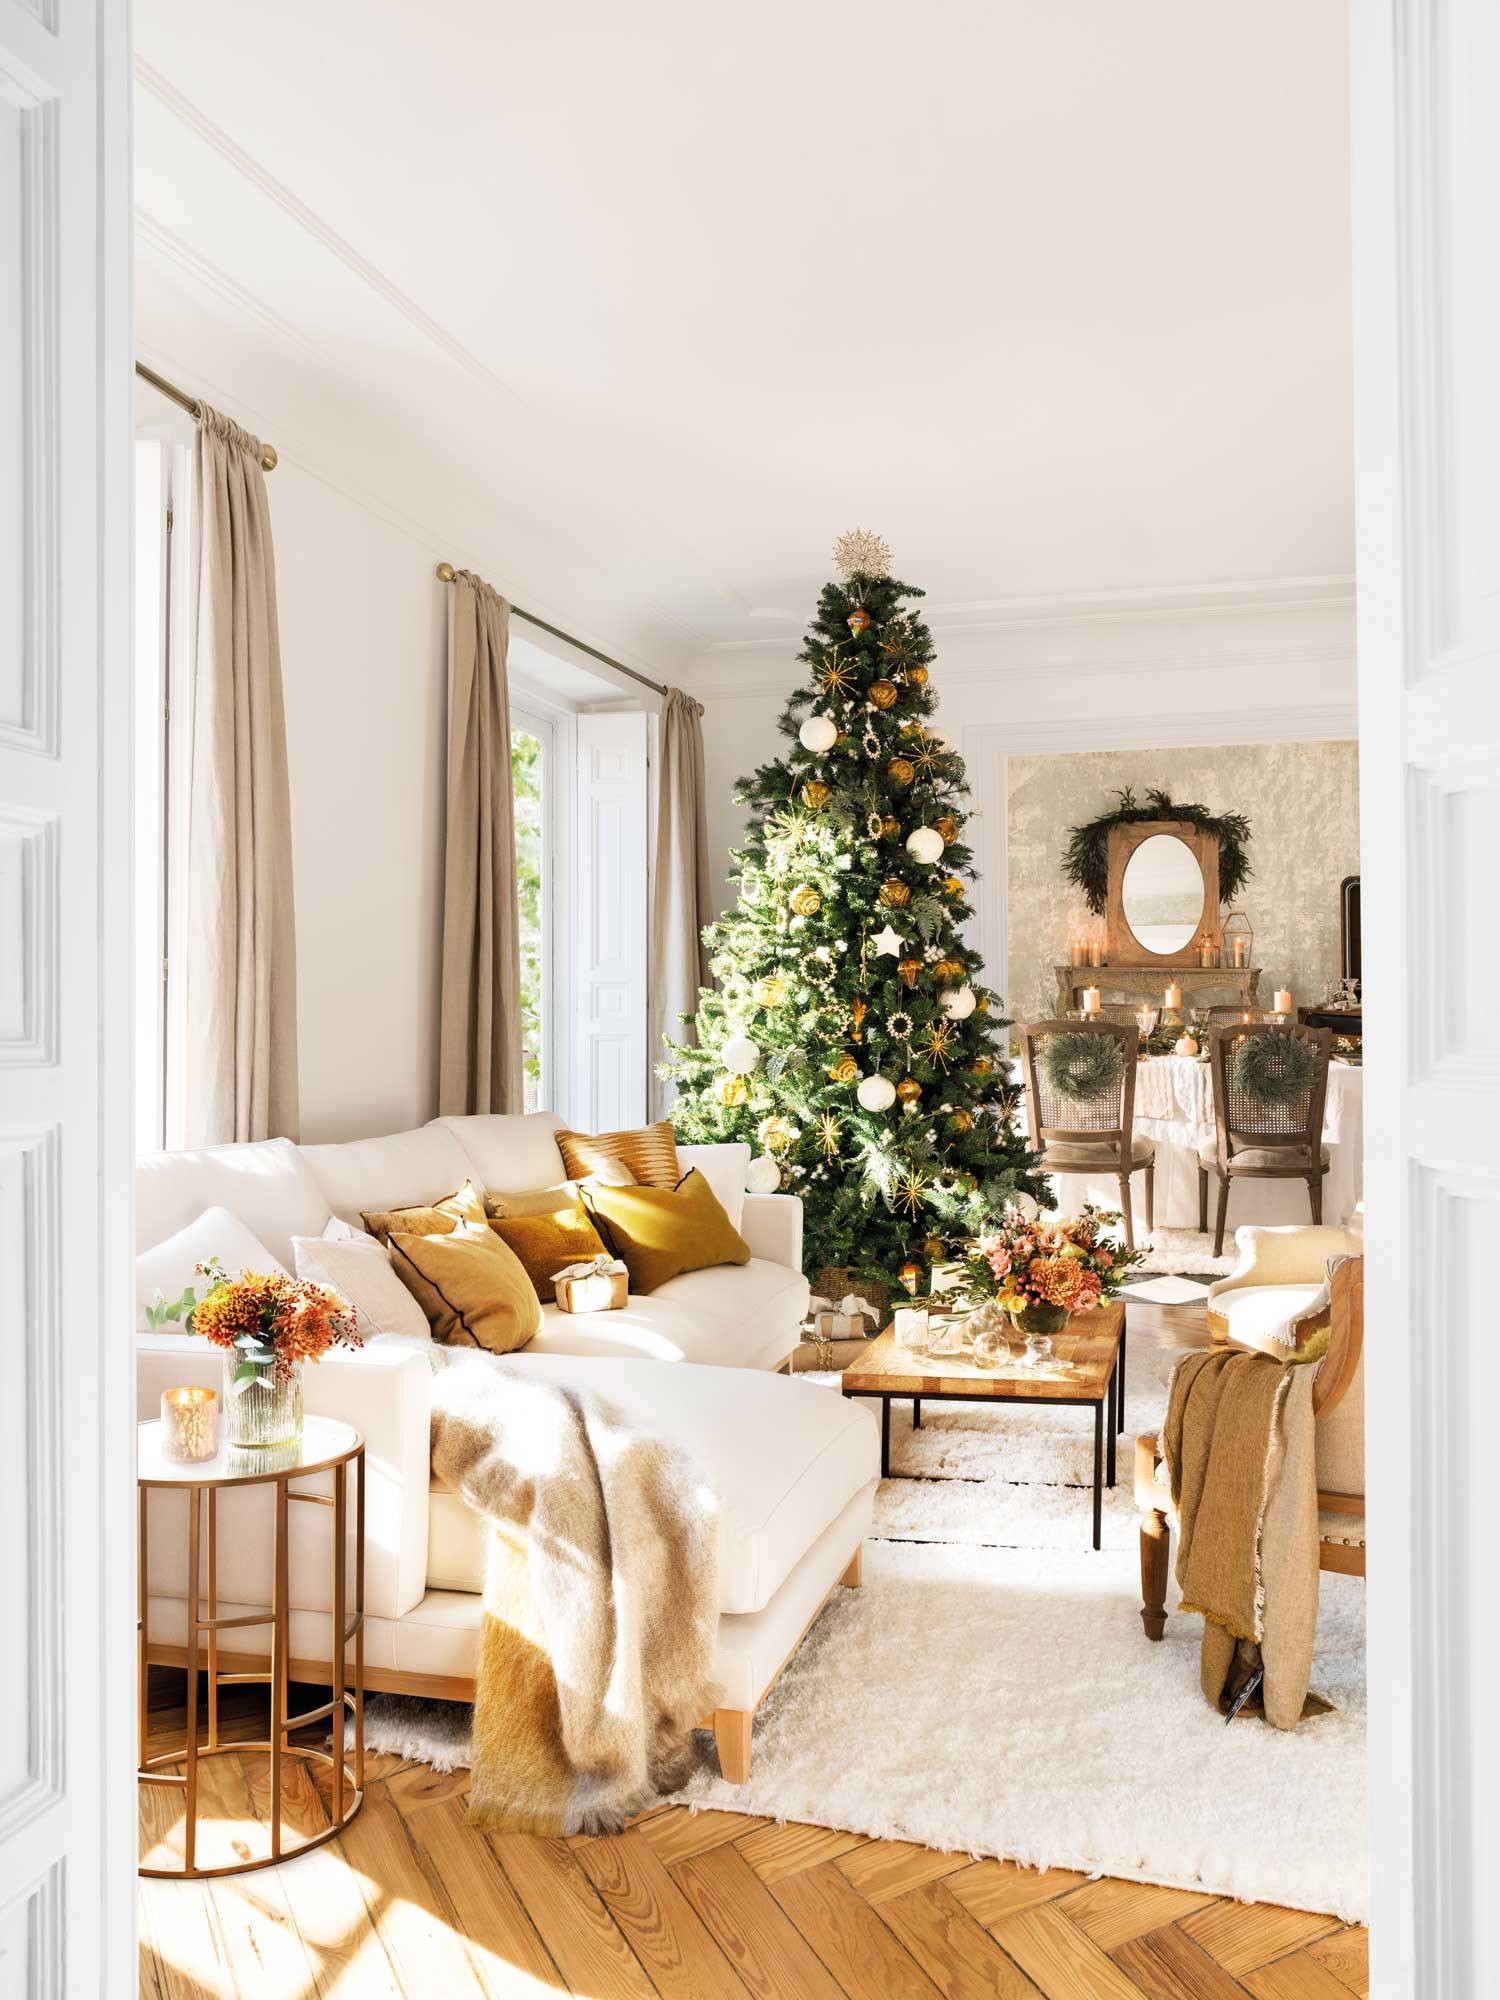 Un salón de Navidad muy elegante en blancos y dorados